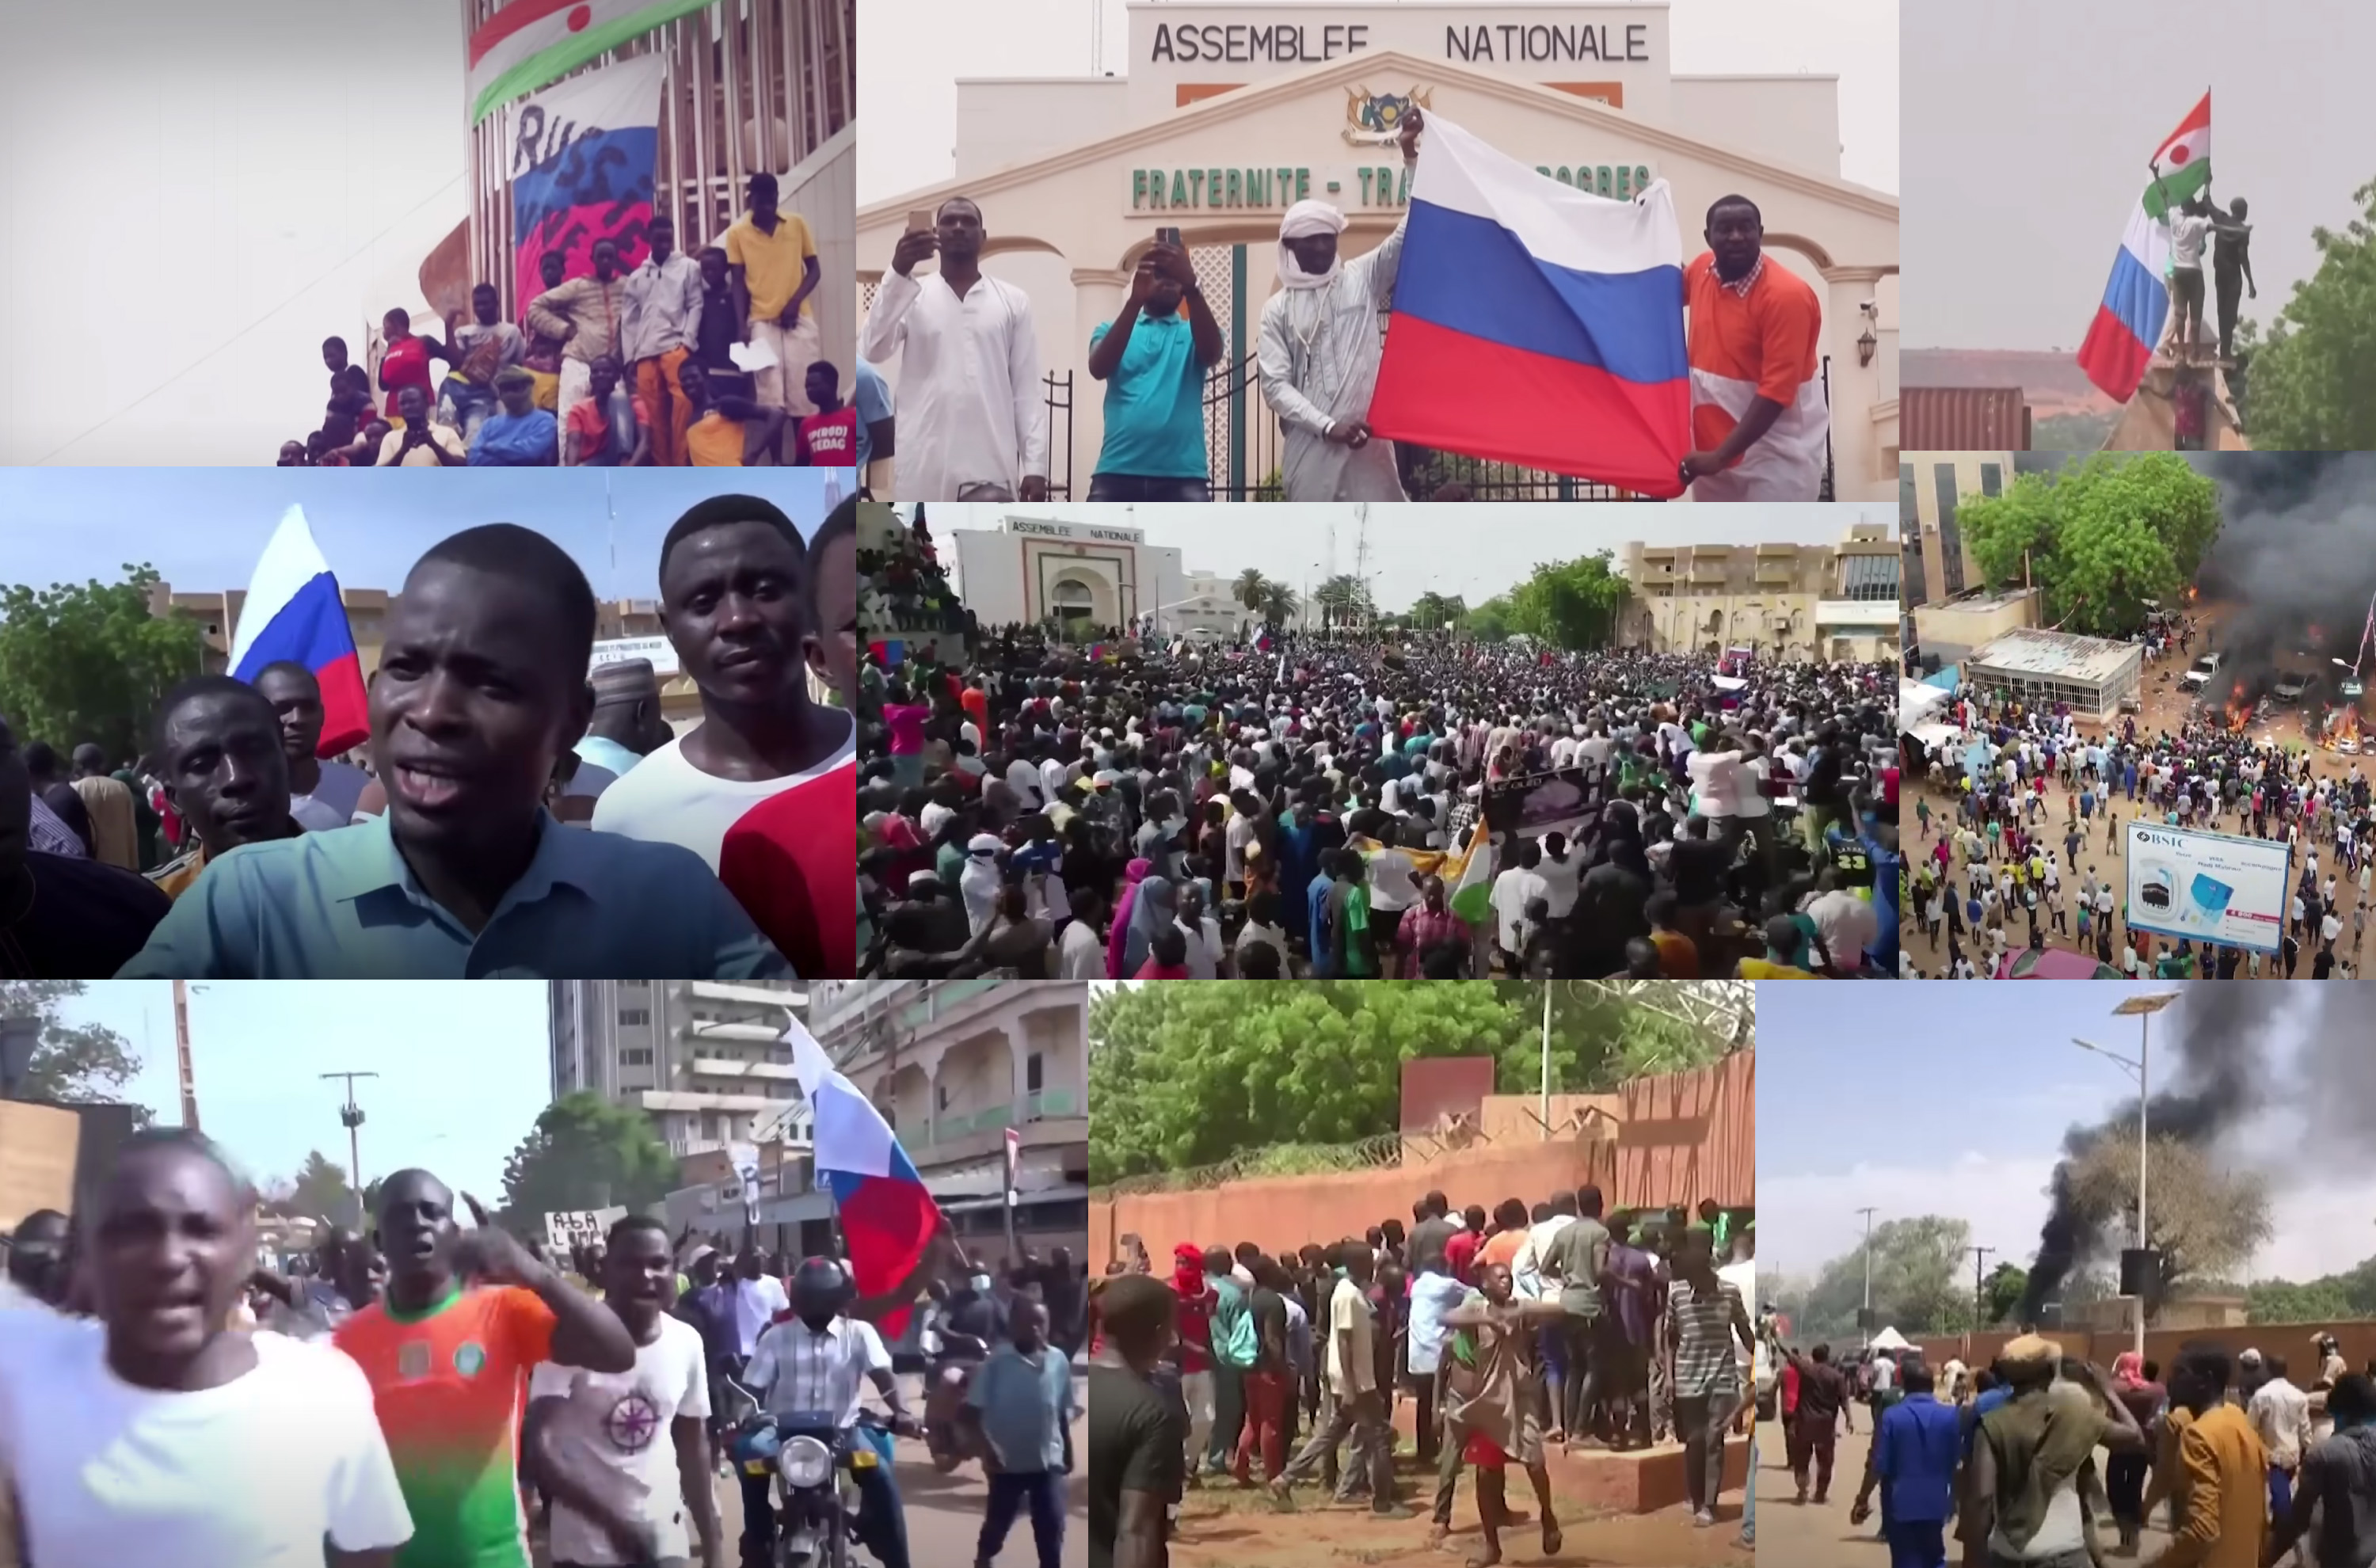 Totalna eskalacija u Sahelu: ECOWAS blok Nigeru prijeti vojnom intervencijom uz blagoslov Washingtona, prosvjednici u glavnom gradu slave vojnu huntu, napadaju francusku ambasadu i mašući ruskim zastavama uzvikuju "Živio Putin!"